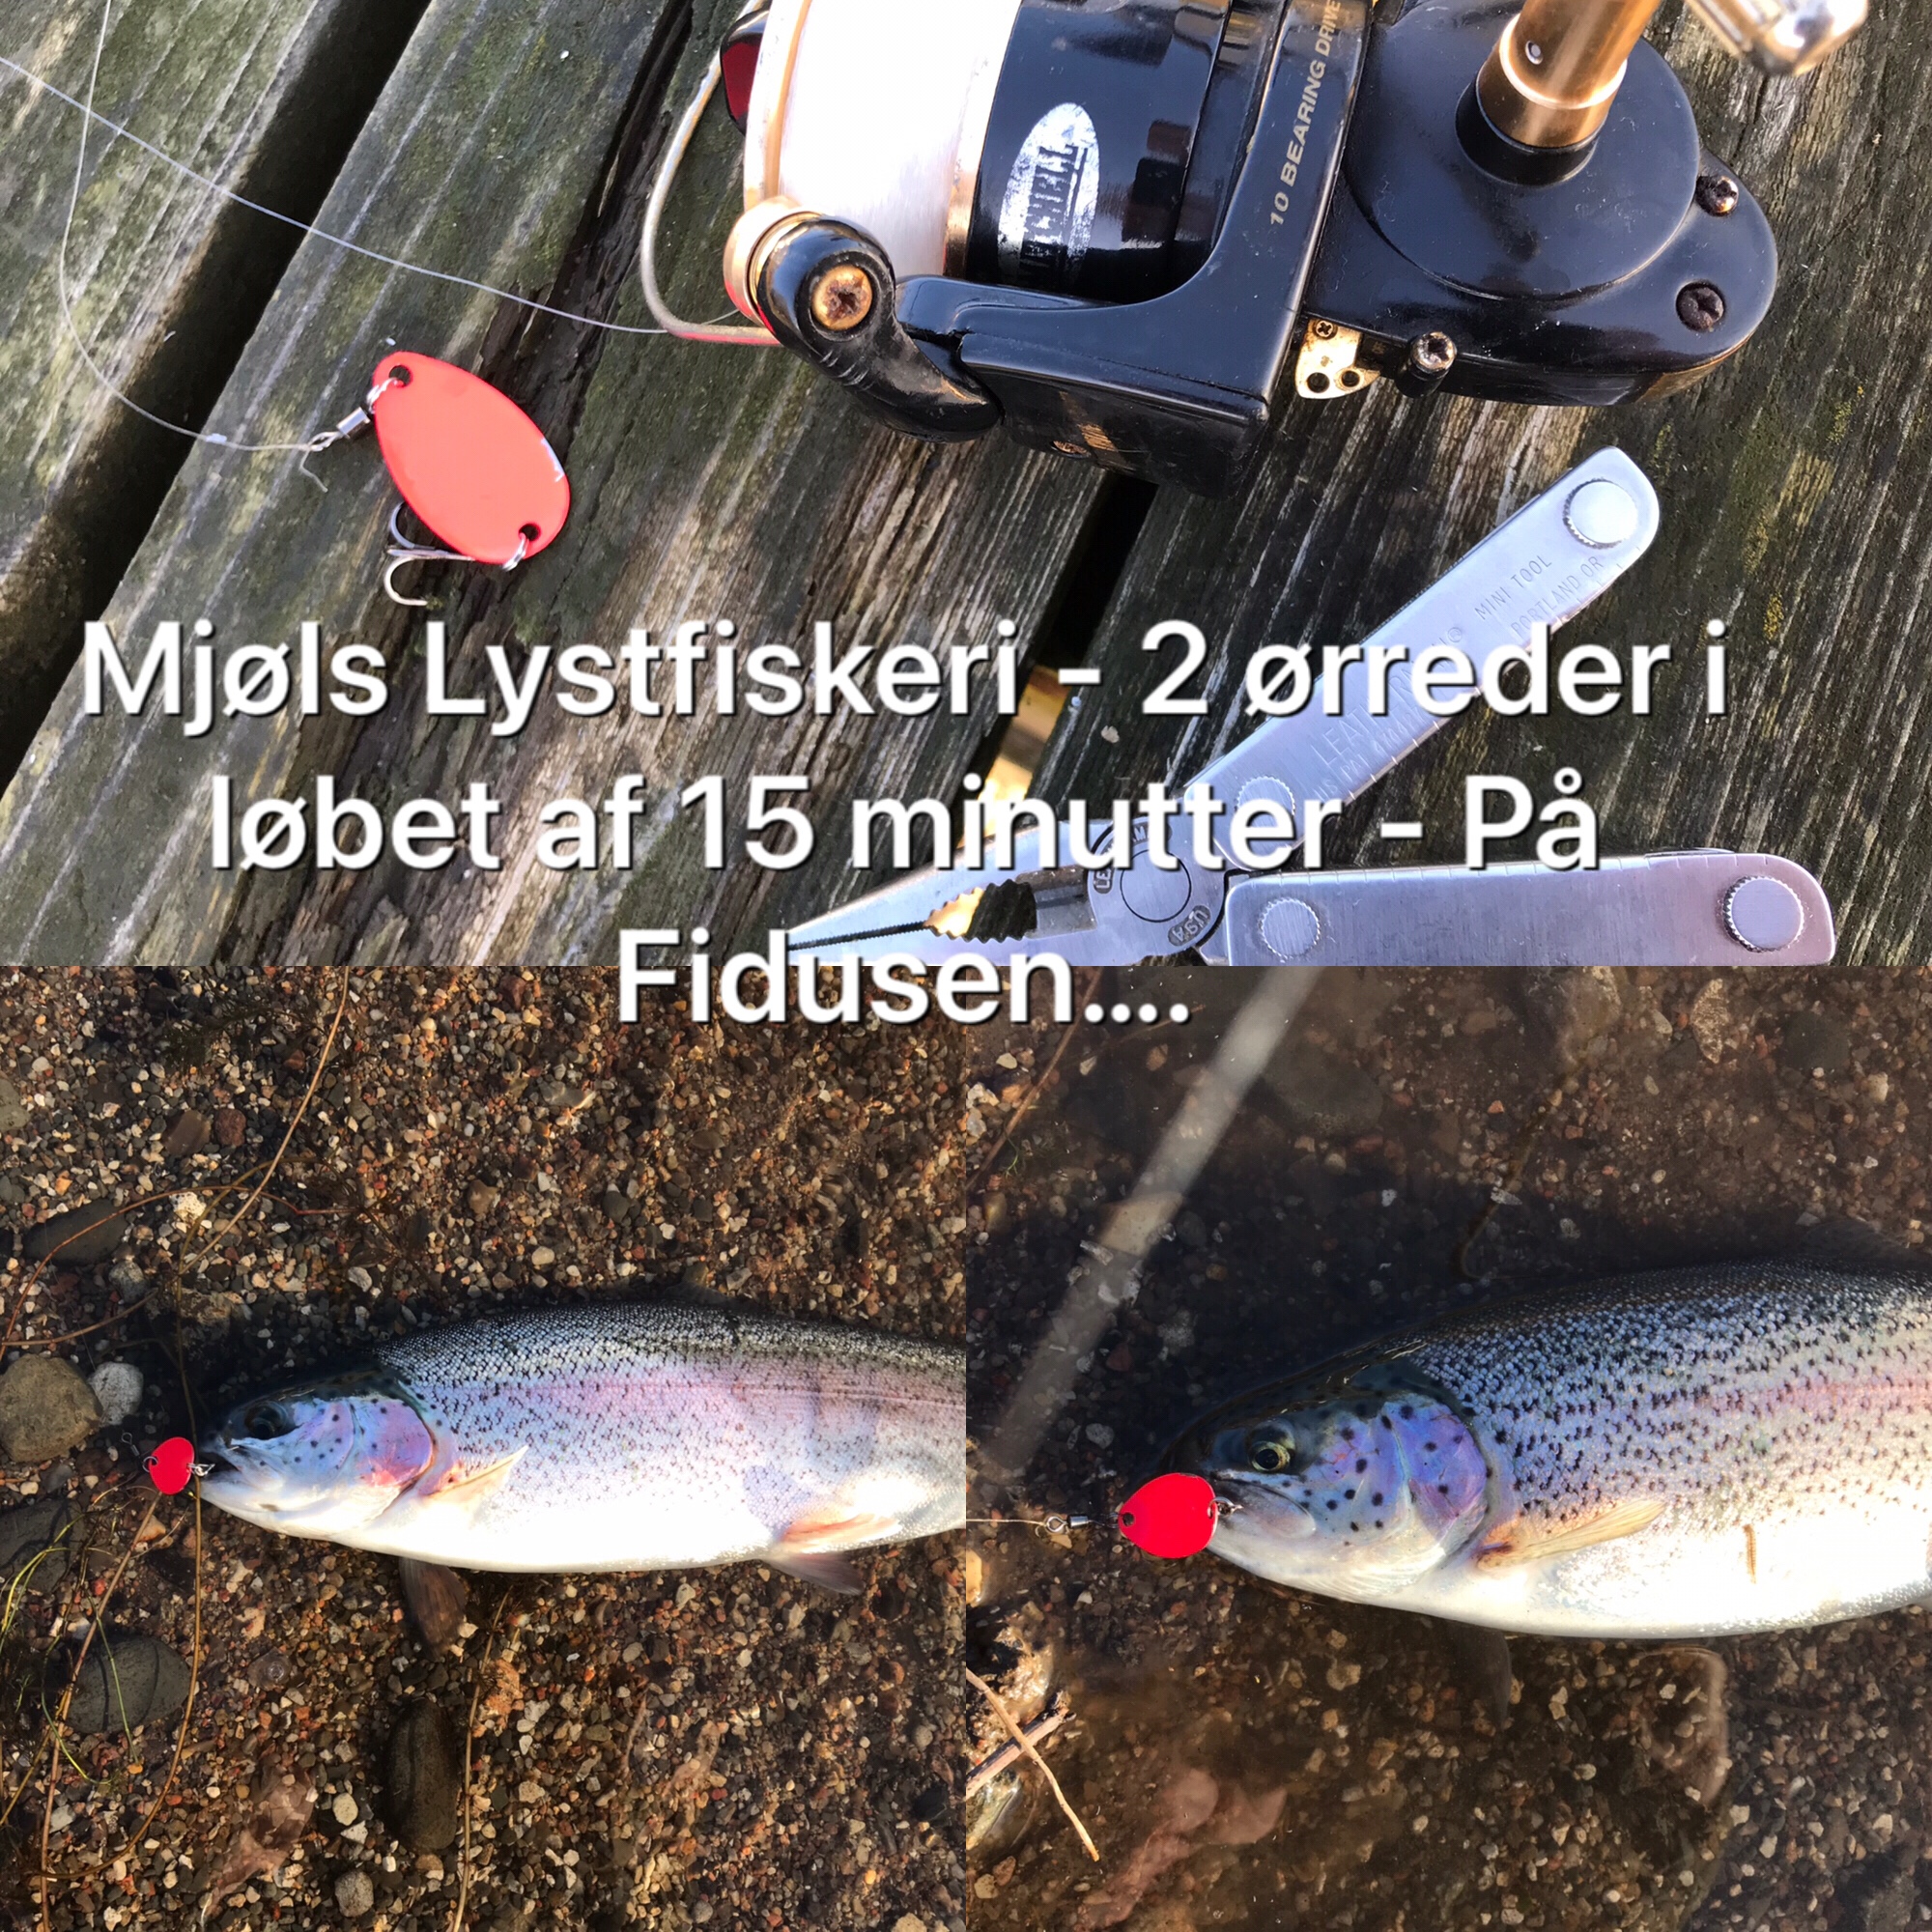 SE VIDEO – Mjøls Lystfiskeri – SØ1 fredag eftermiddag – Fidusen gav fisk